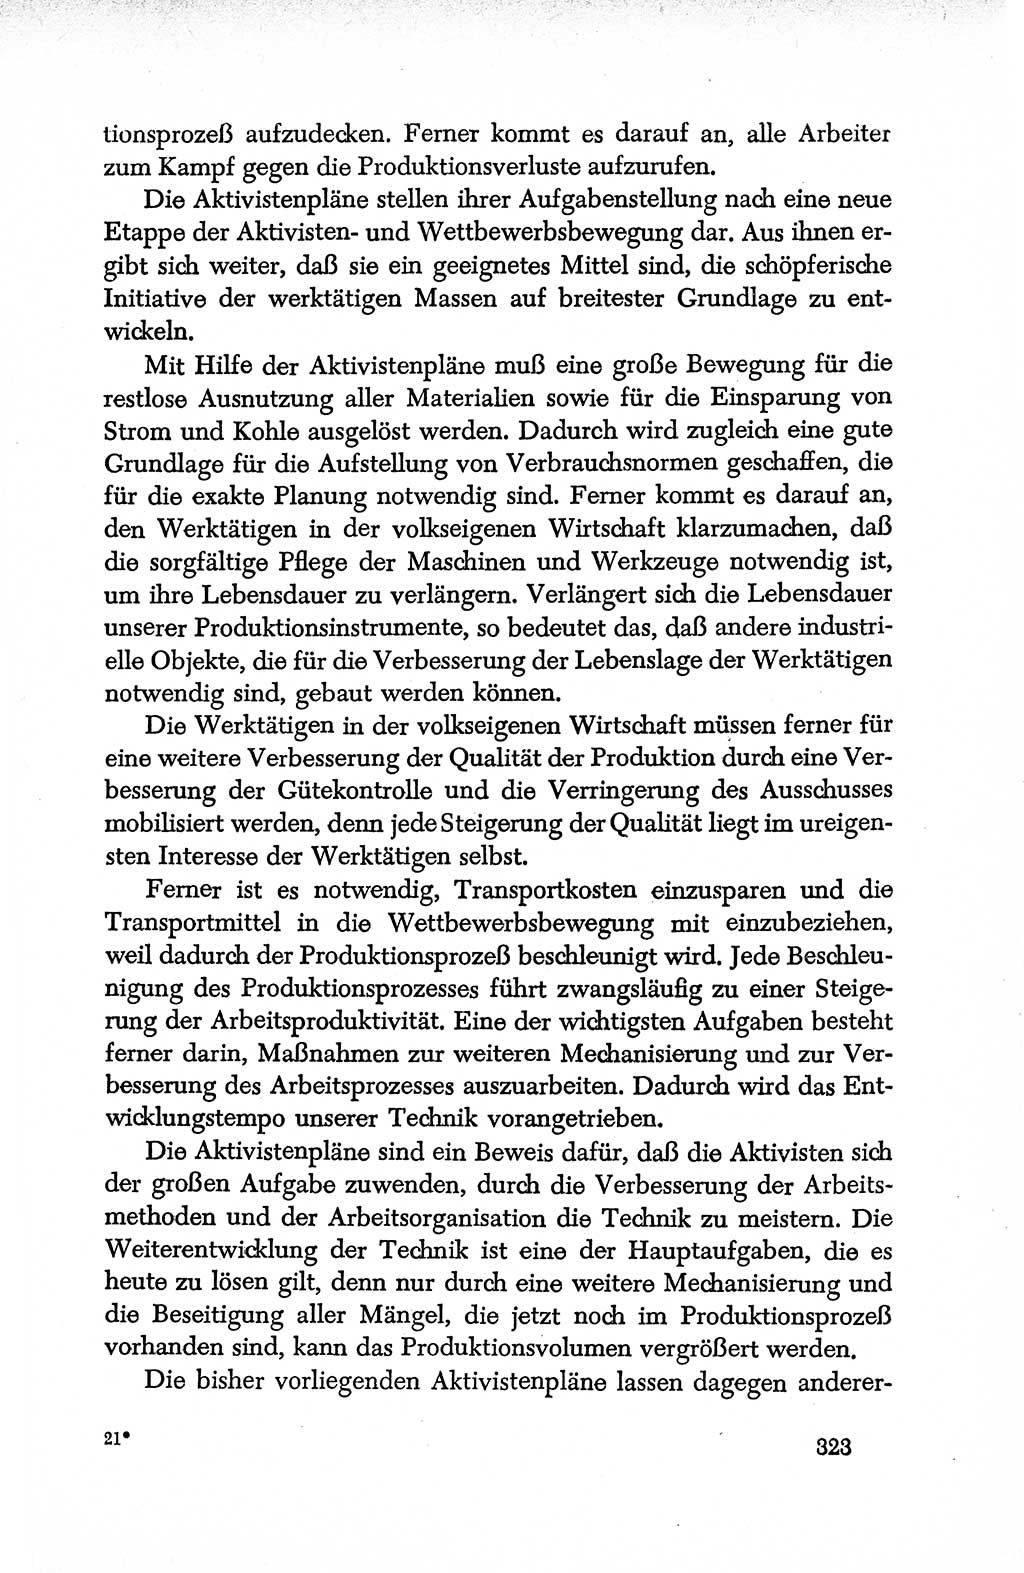 Dokumente der Sozialistischen Einheitspartei Deutschlands (SED) [Deutsche Demokratische Republik (DDR)] 1950-1952, Seite 323 (Dok. SED DDR 1950-1952, S. 323)